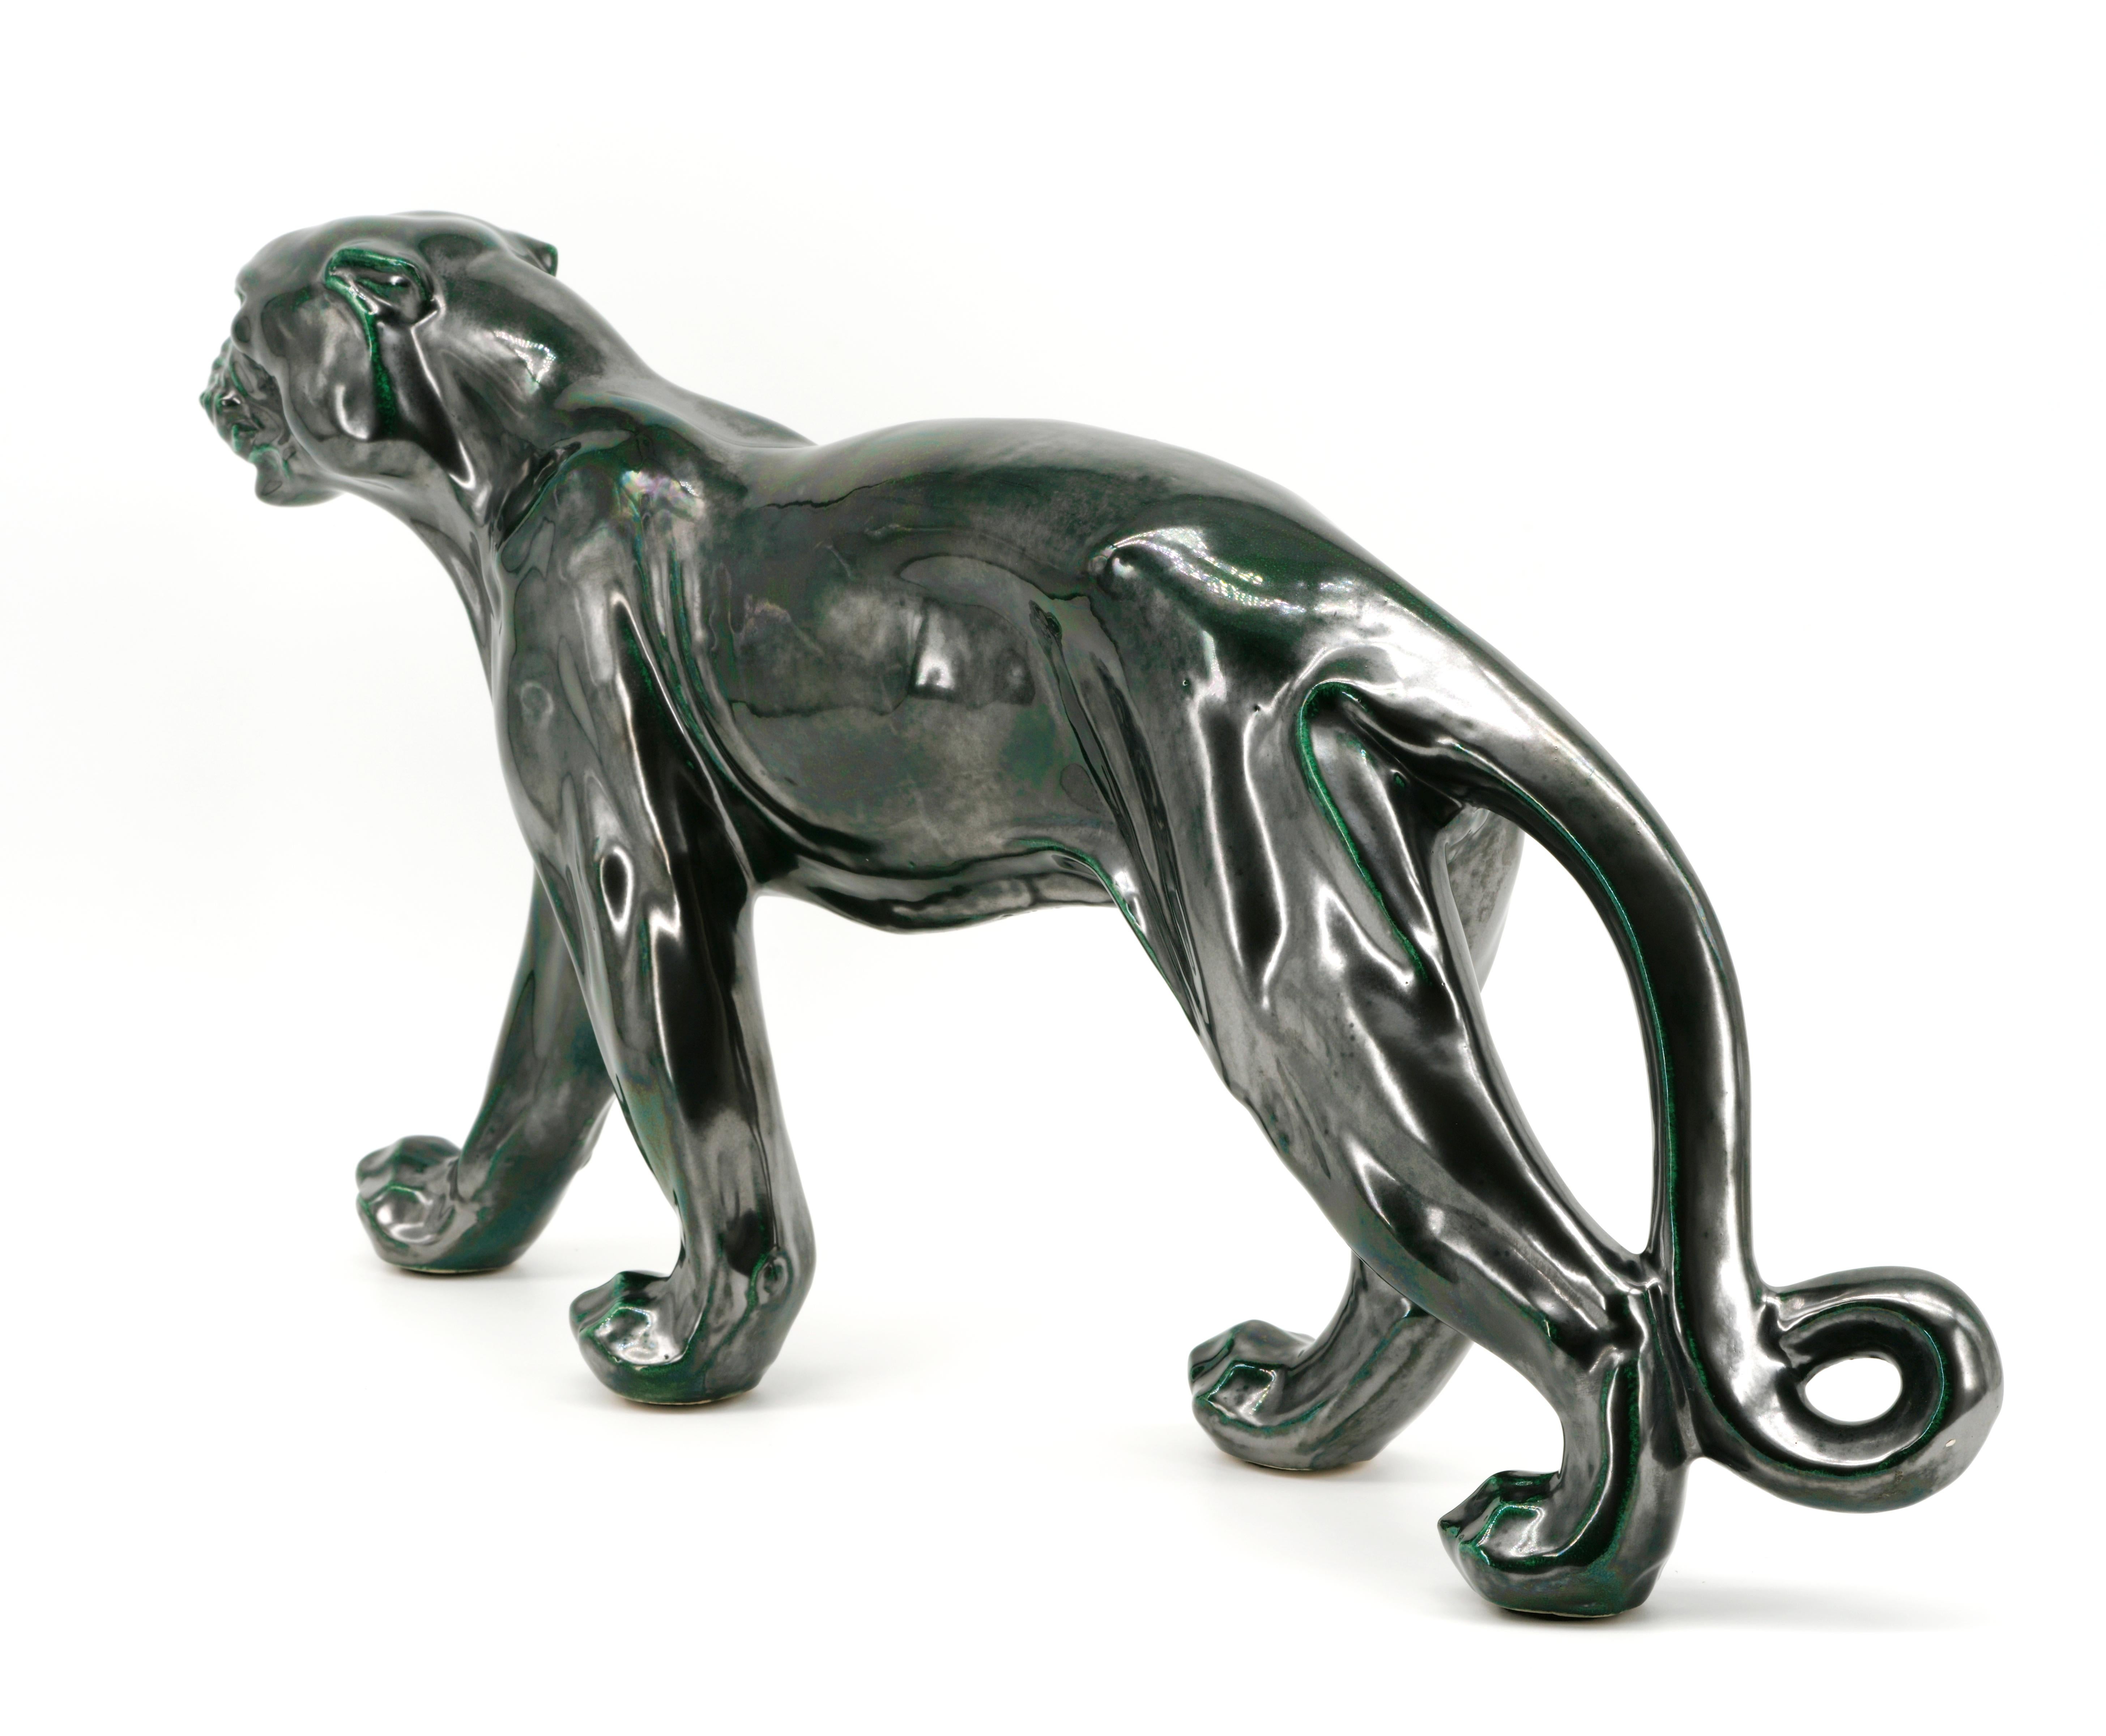 Santiago Rodriguez Bonome French Art Deco Ceramic Panther Sculpture, 1940s For Sale 2